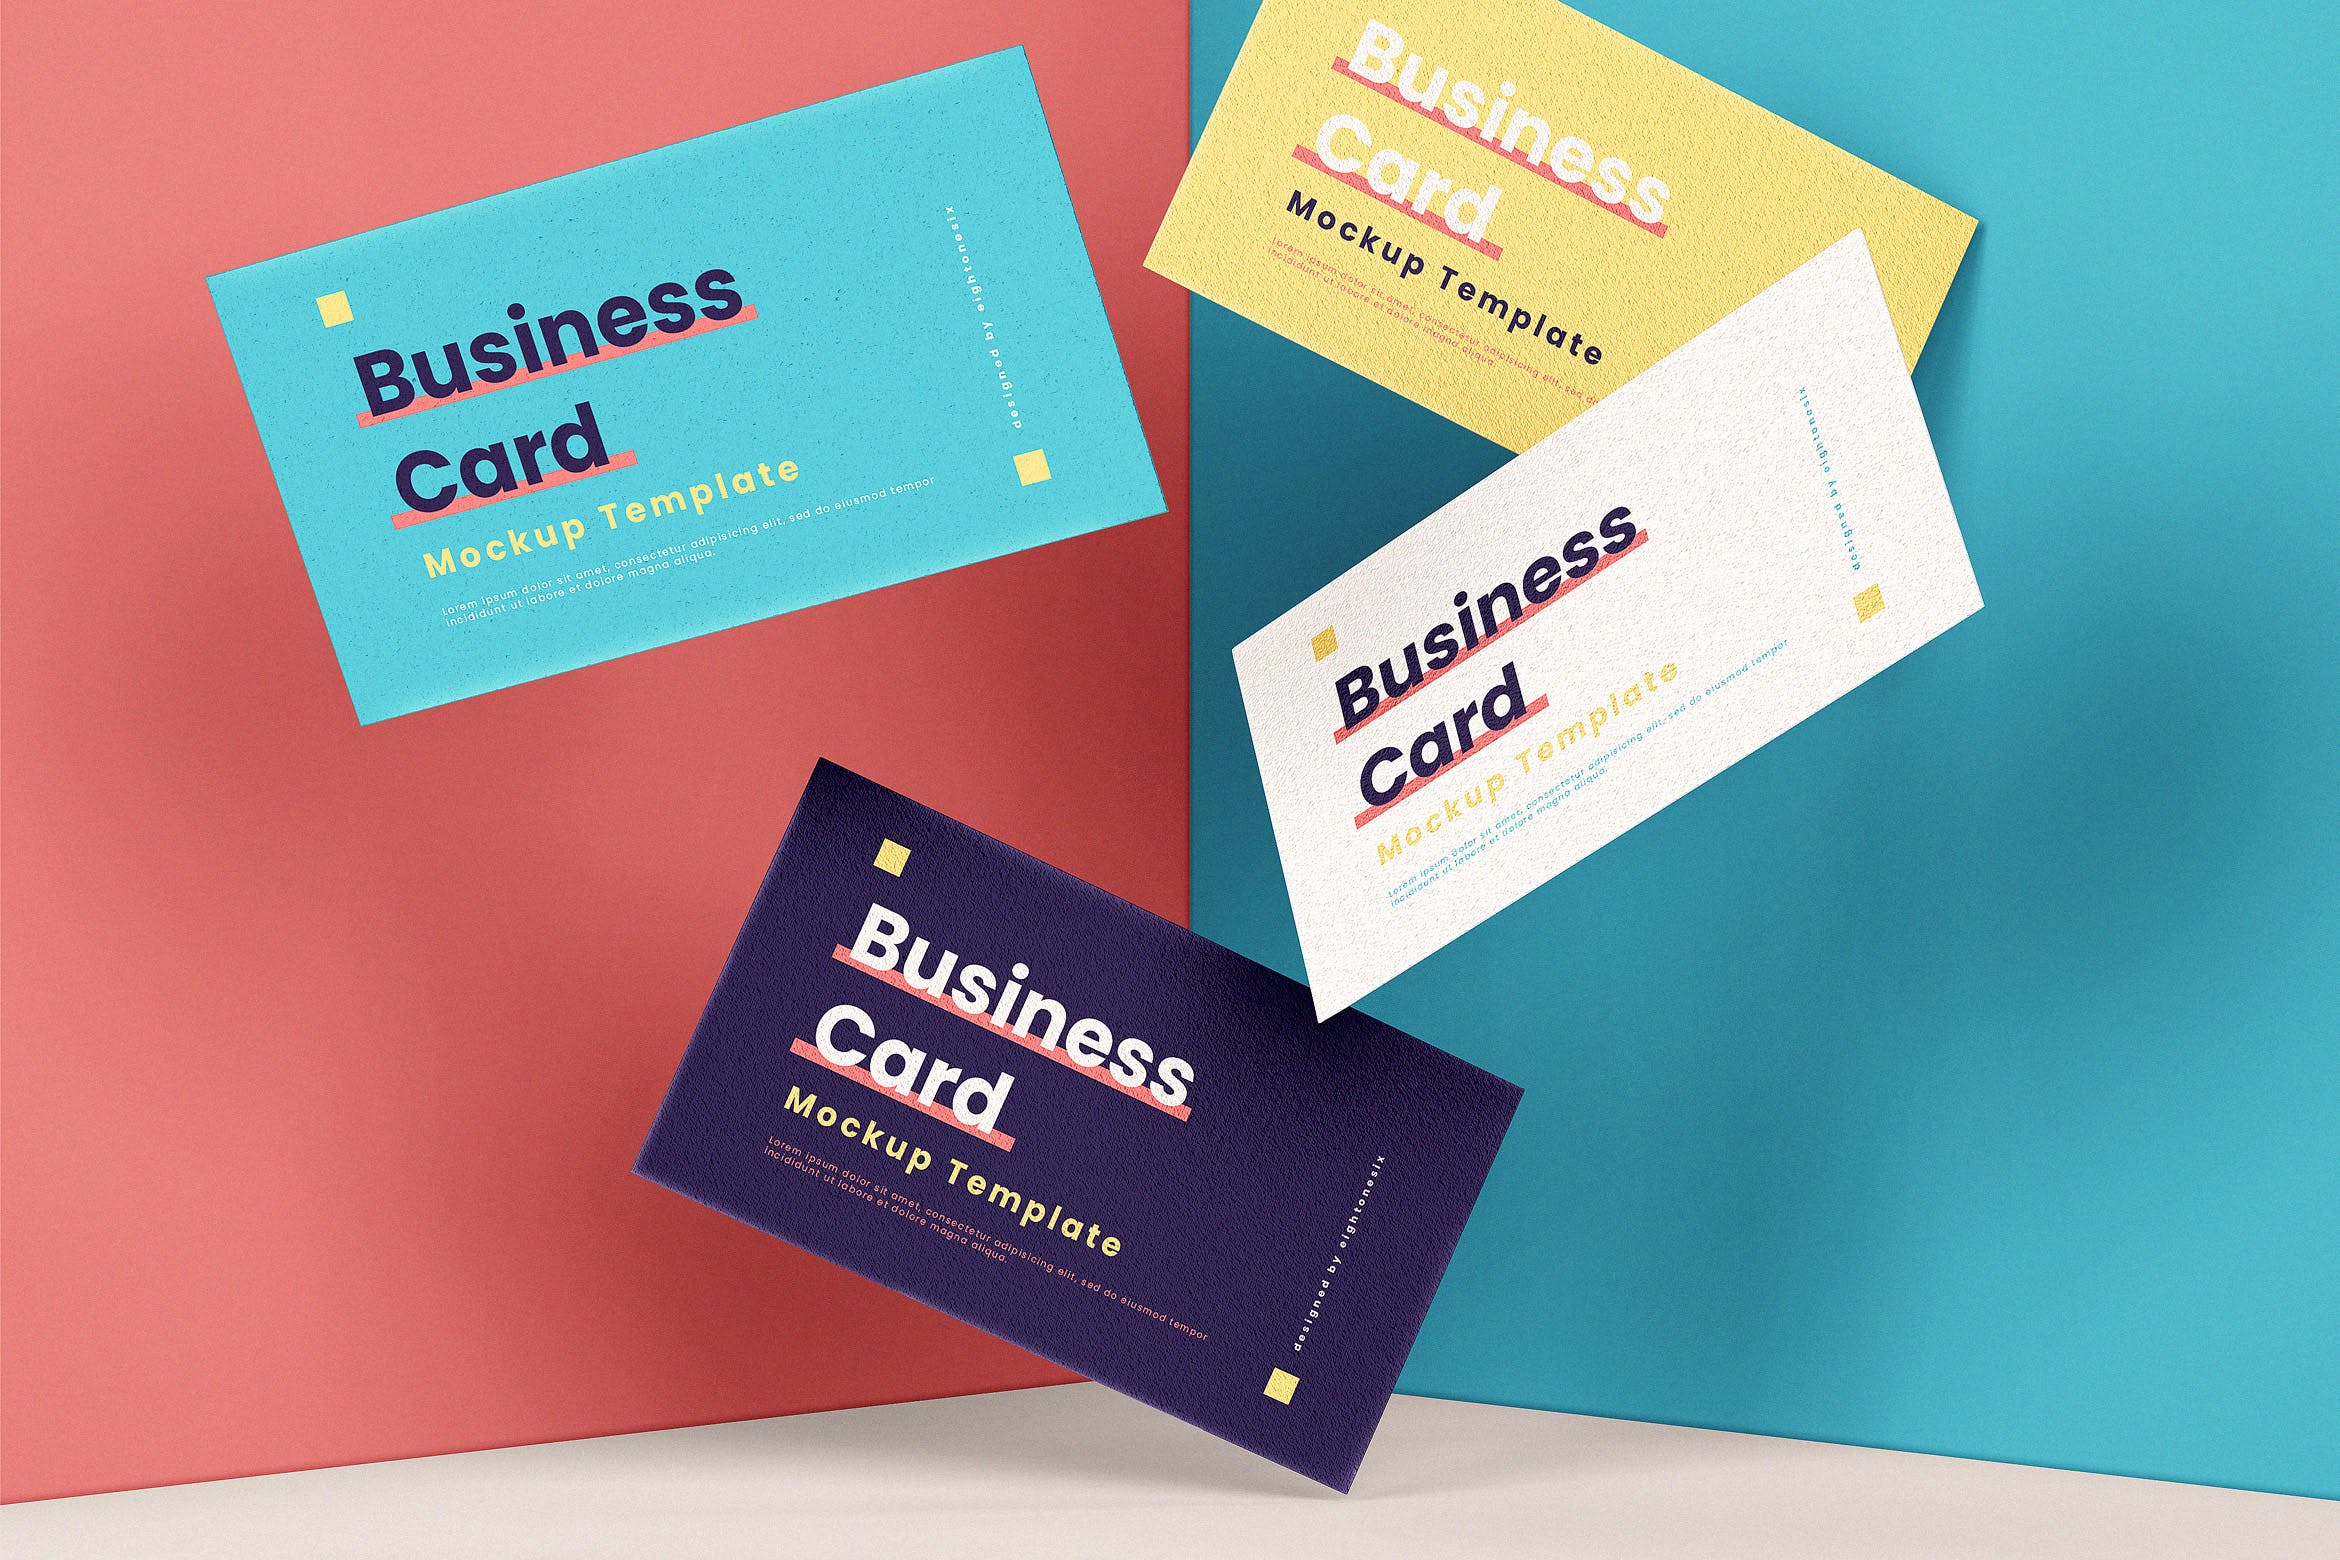 企业名片悬浮效果图大洋岛精选模板 Business Card Mock-Up Template插图